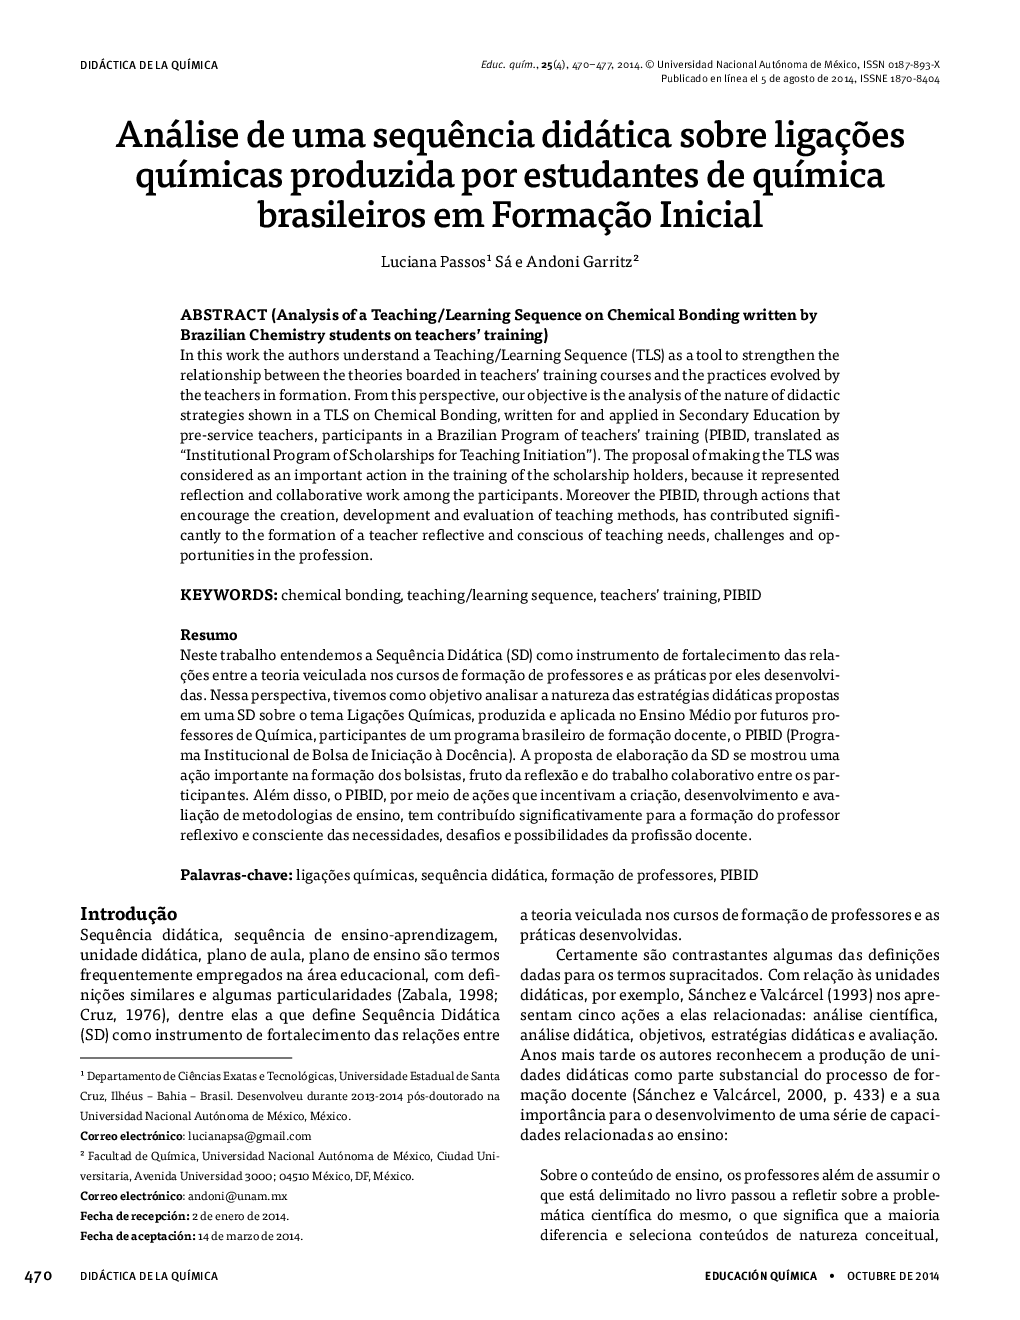 تجزیه و تحلیل امنیت منحصر به فرد در مورد دستهبندی کالاهای تولید شده توسط دانشجویان شیمی درمانی برزیل در فرم سالم 